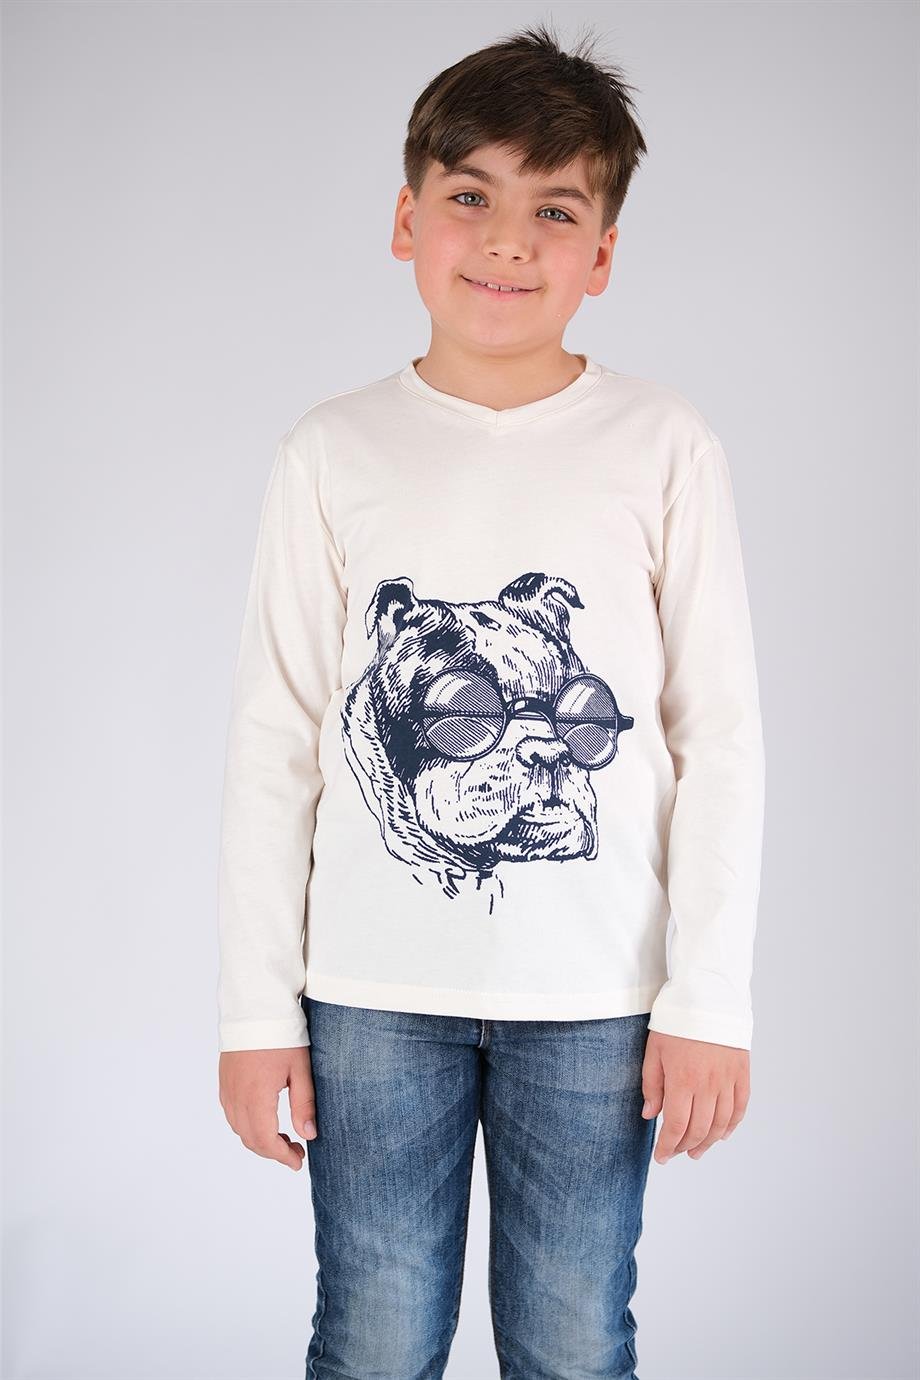 Çocuk Pamuk T-Shirt Model ve Çeşitleri